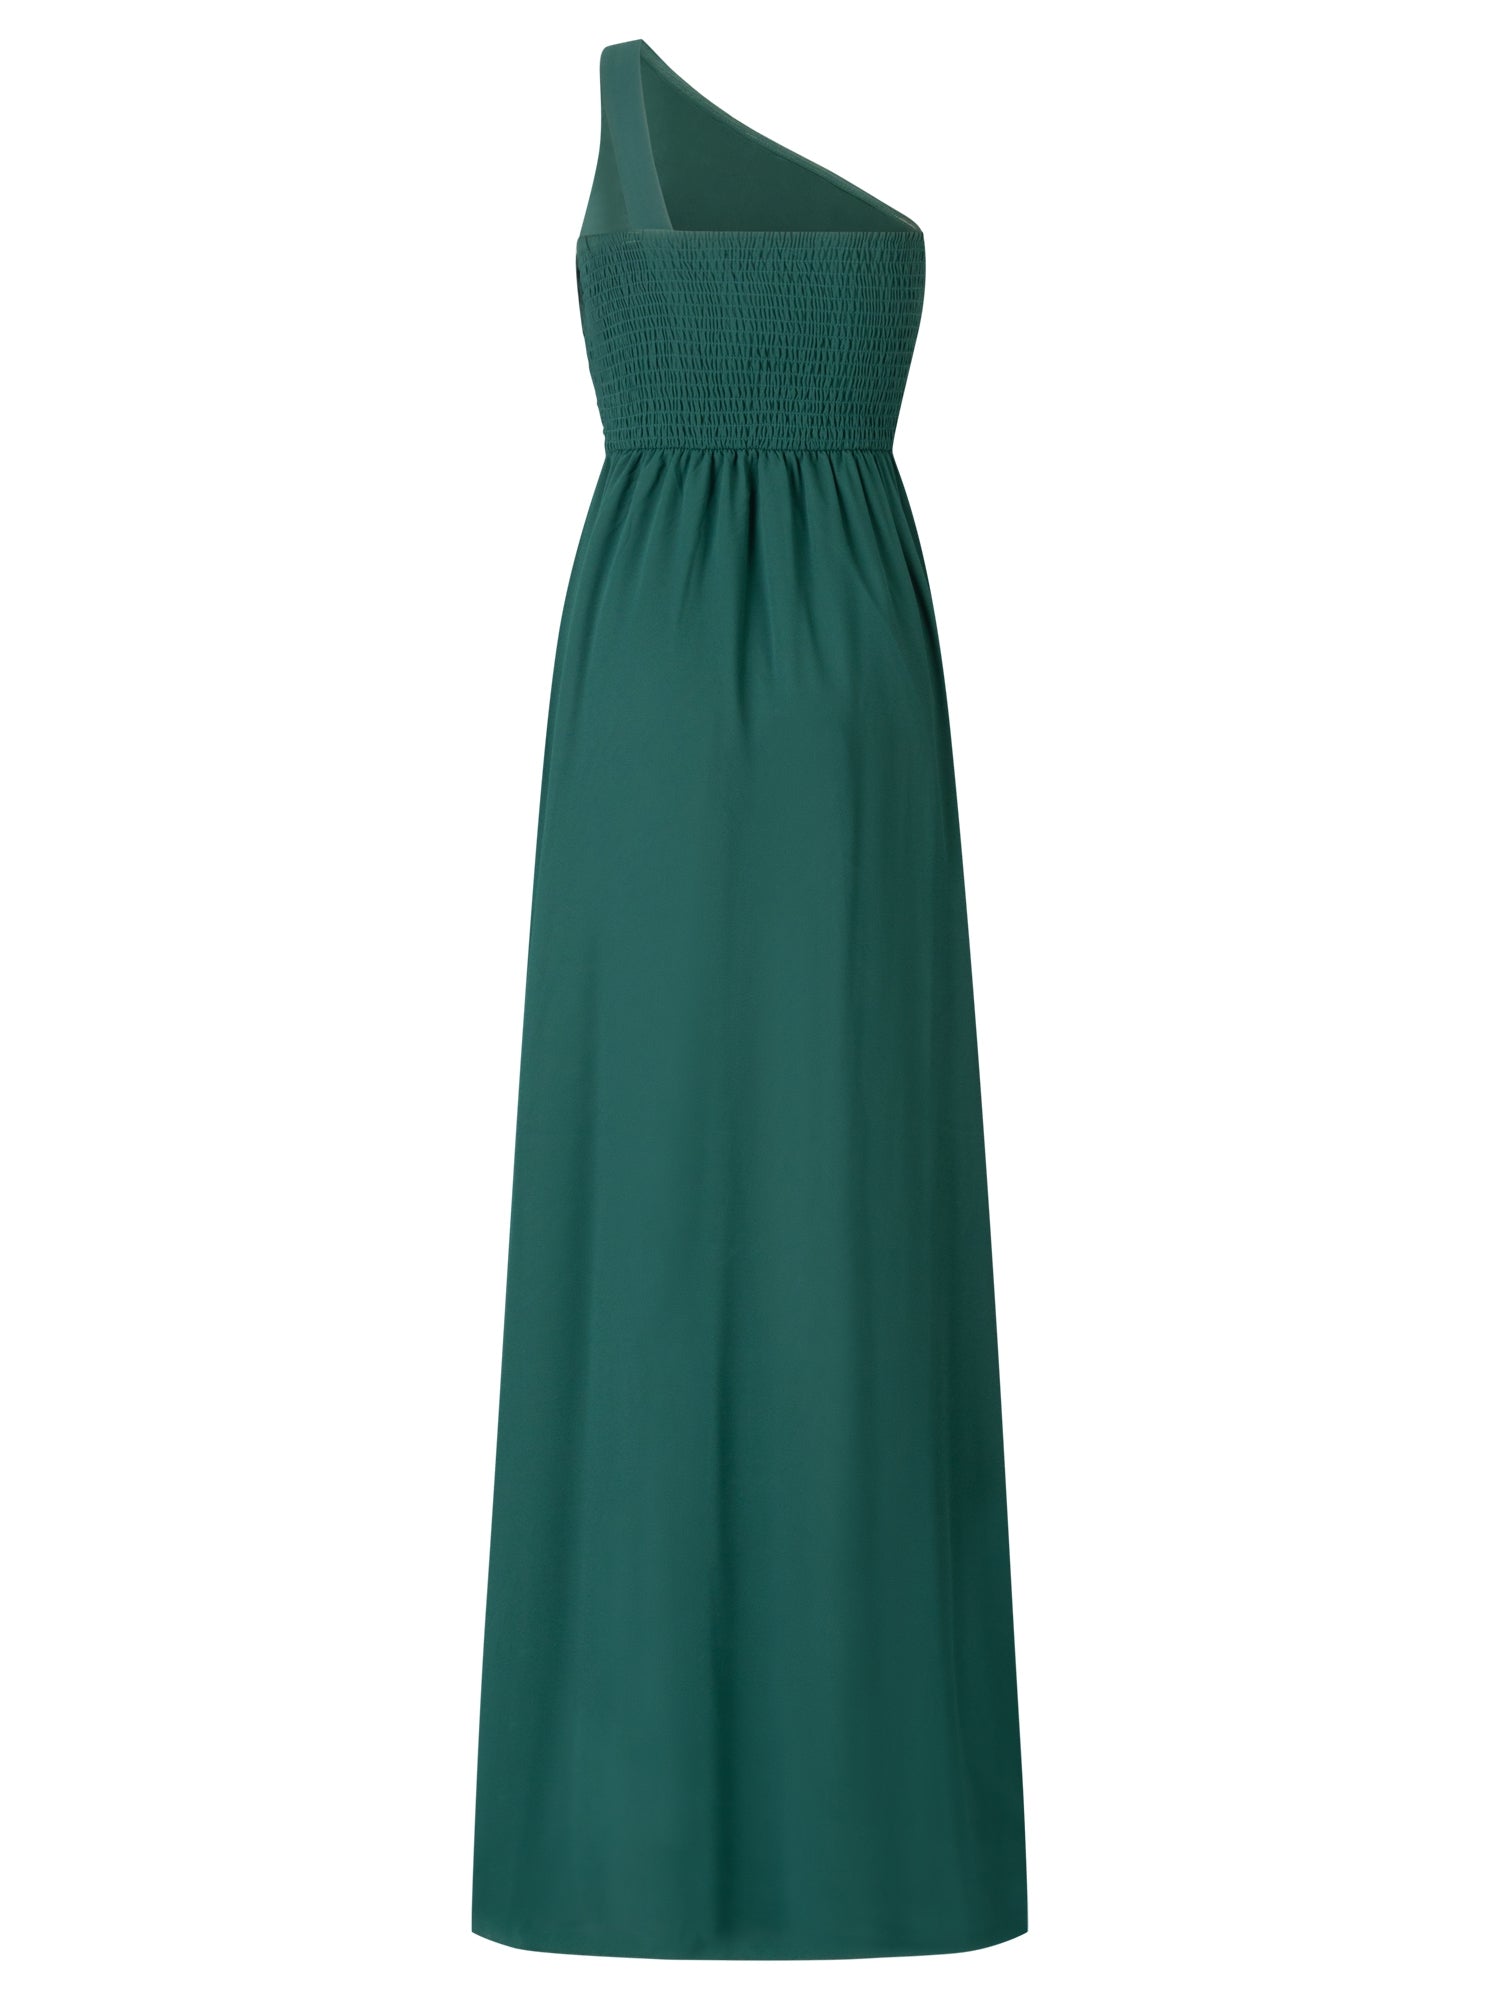 APART Abendkleider mit  Rückenausschnitt | emerald